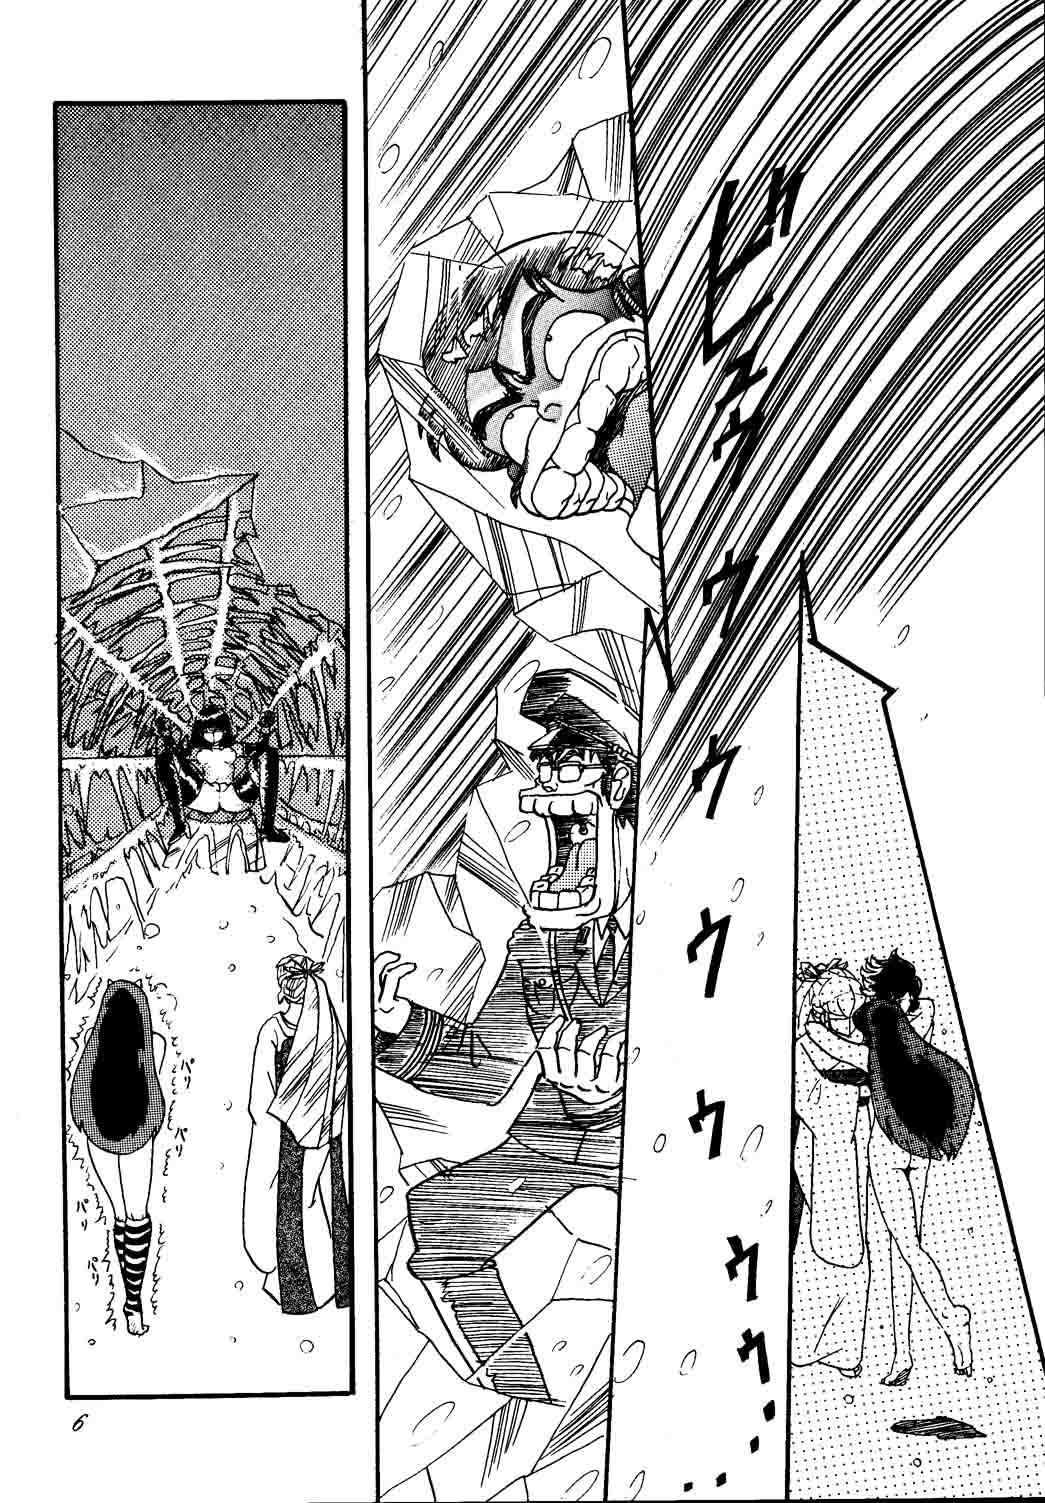 Hardcore sadistic 10 - Sailor moon Street fighter Urusei yatsura Best Blow Job Ever - Page 6